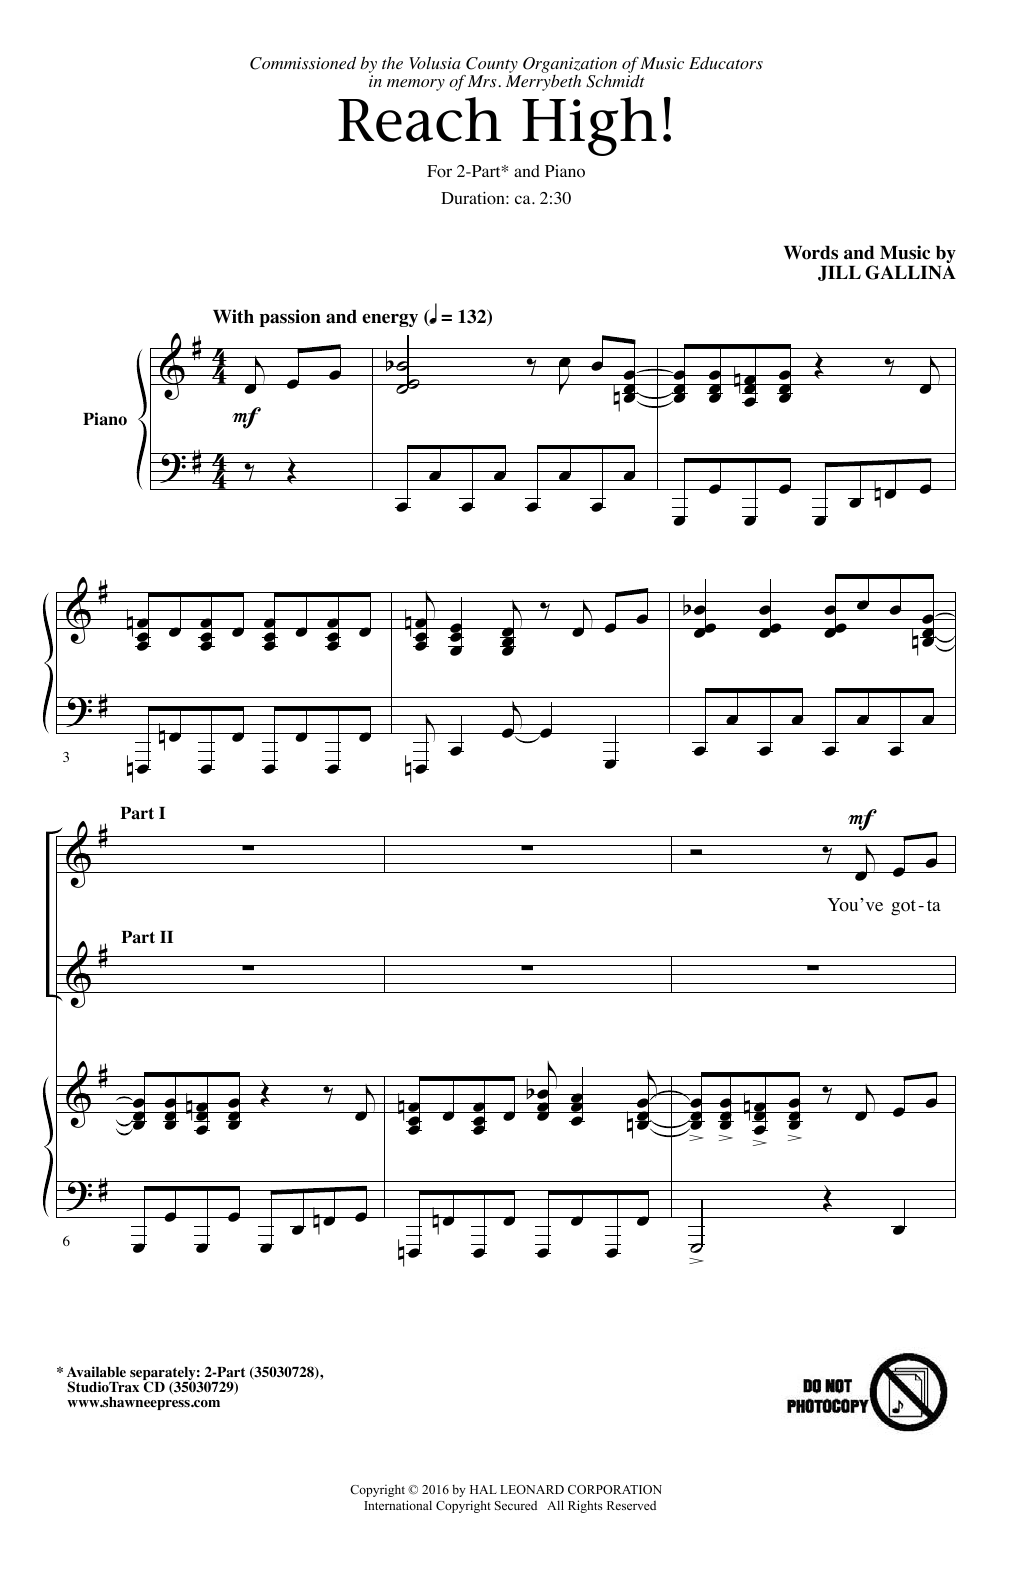 Jill Gallina Reach High! Sheet Music Notes & Chords for 2-Part Choir - Download or Print PDF